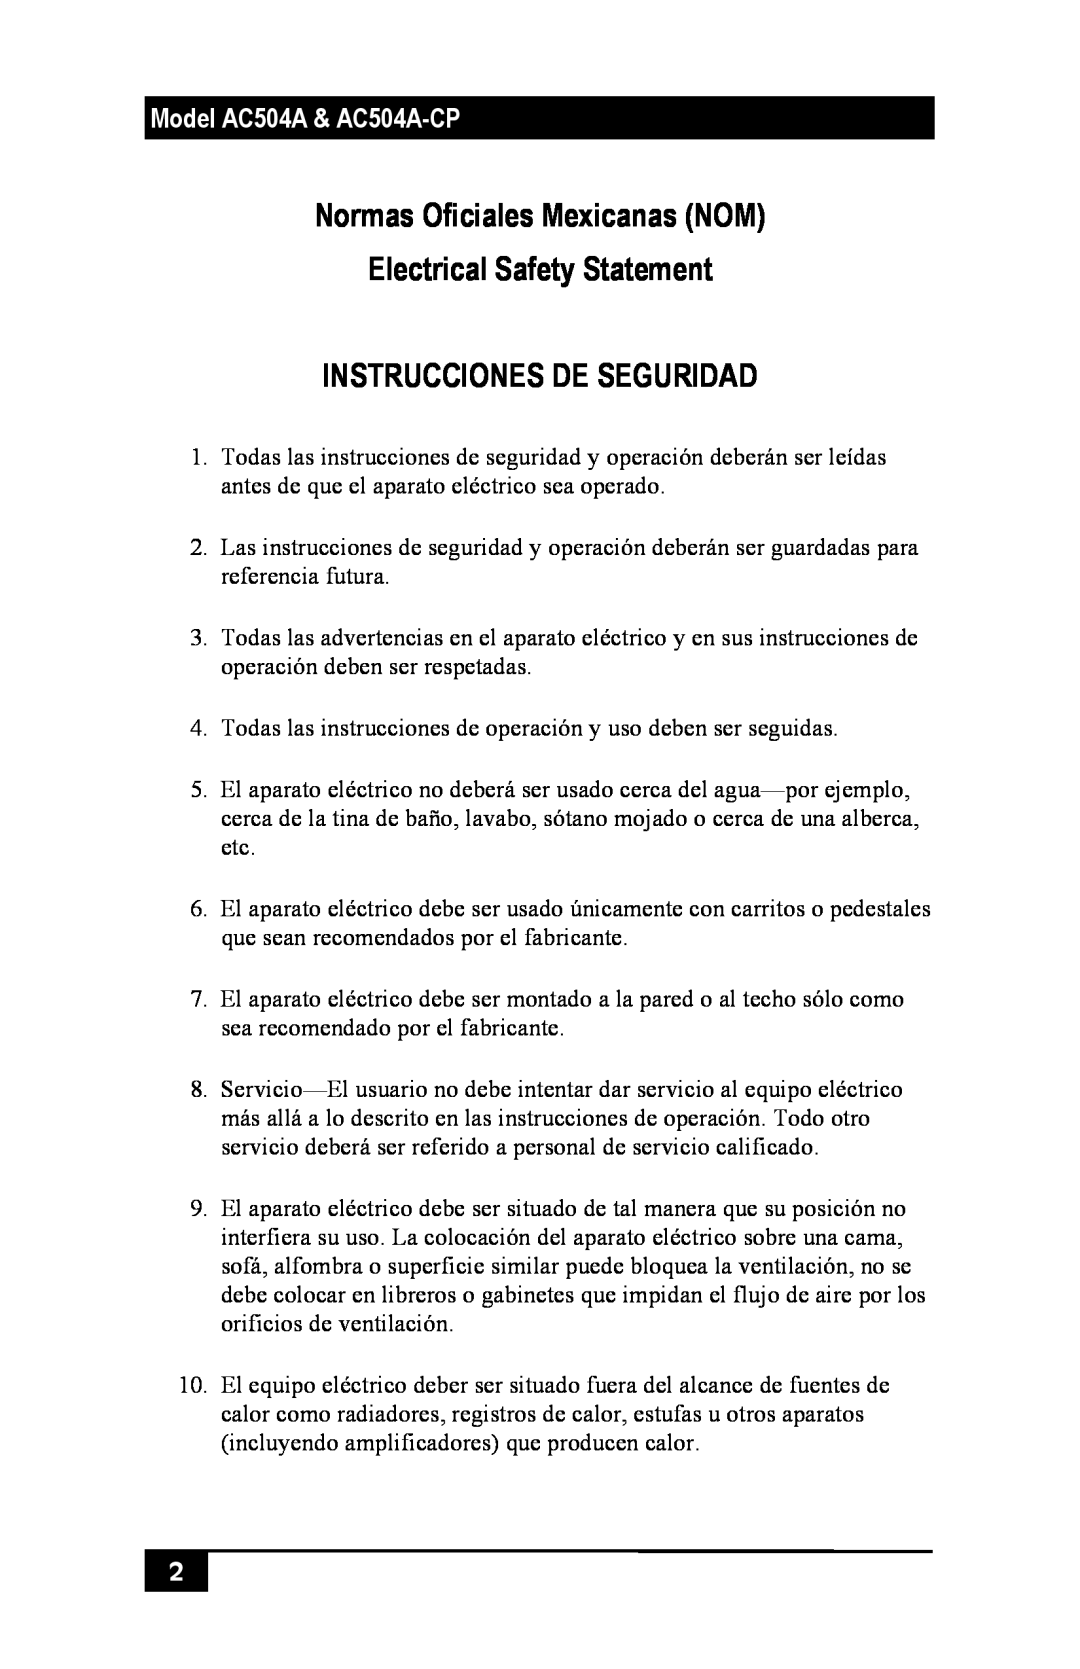 Black Box AC504A-CP manual Normas Oficiales Mexicanas NOM Electrical Safety Statement, Instrucciones De Seguridad 